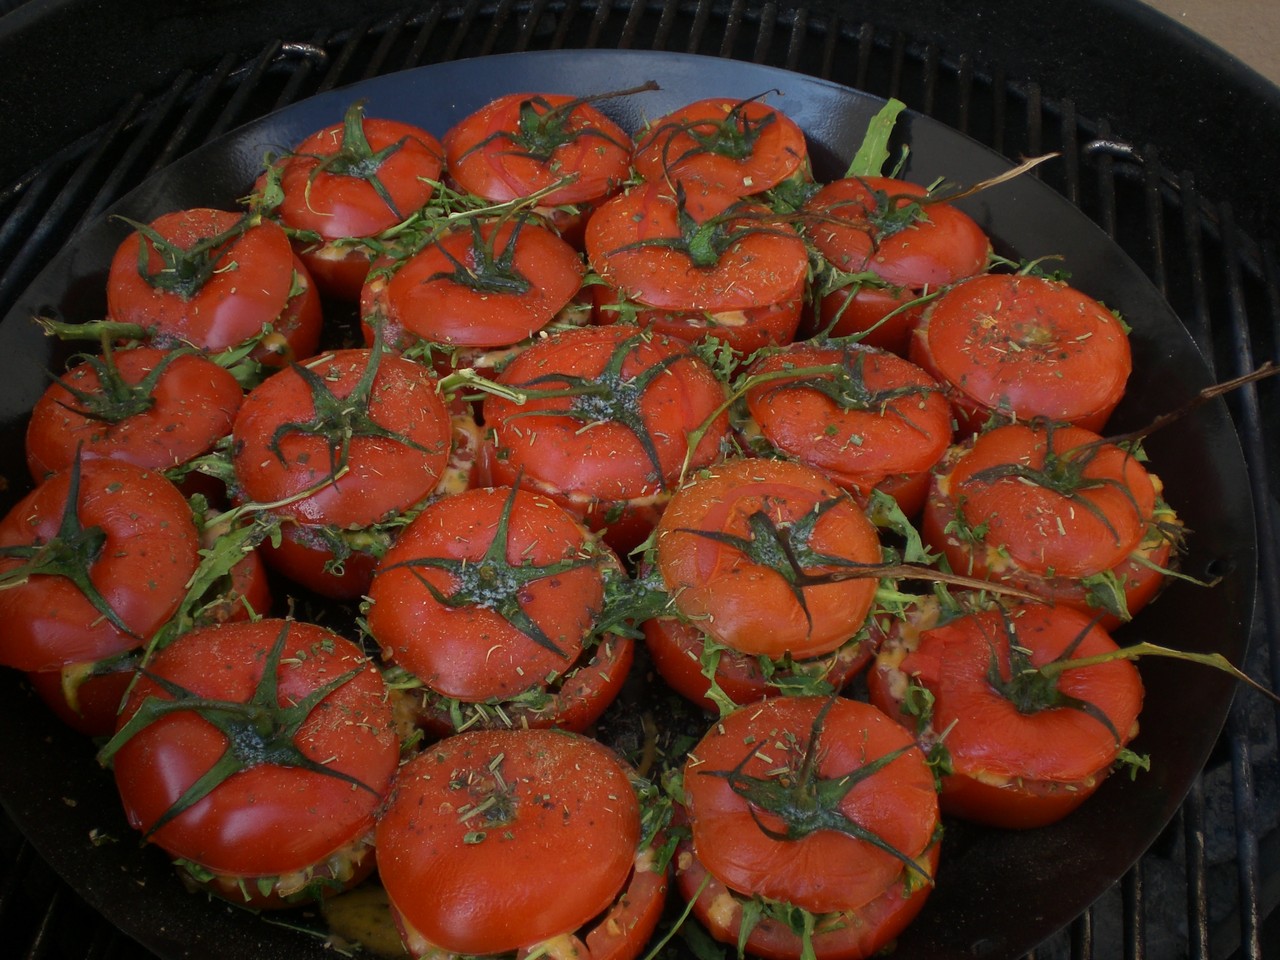 Tomatoes Shells (Gefüllte Tomaten)